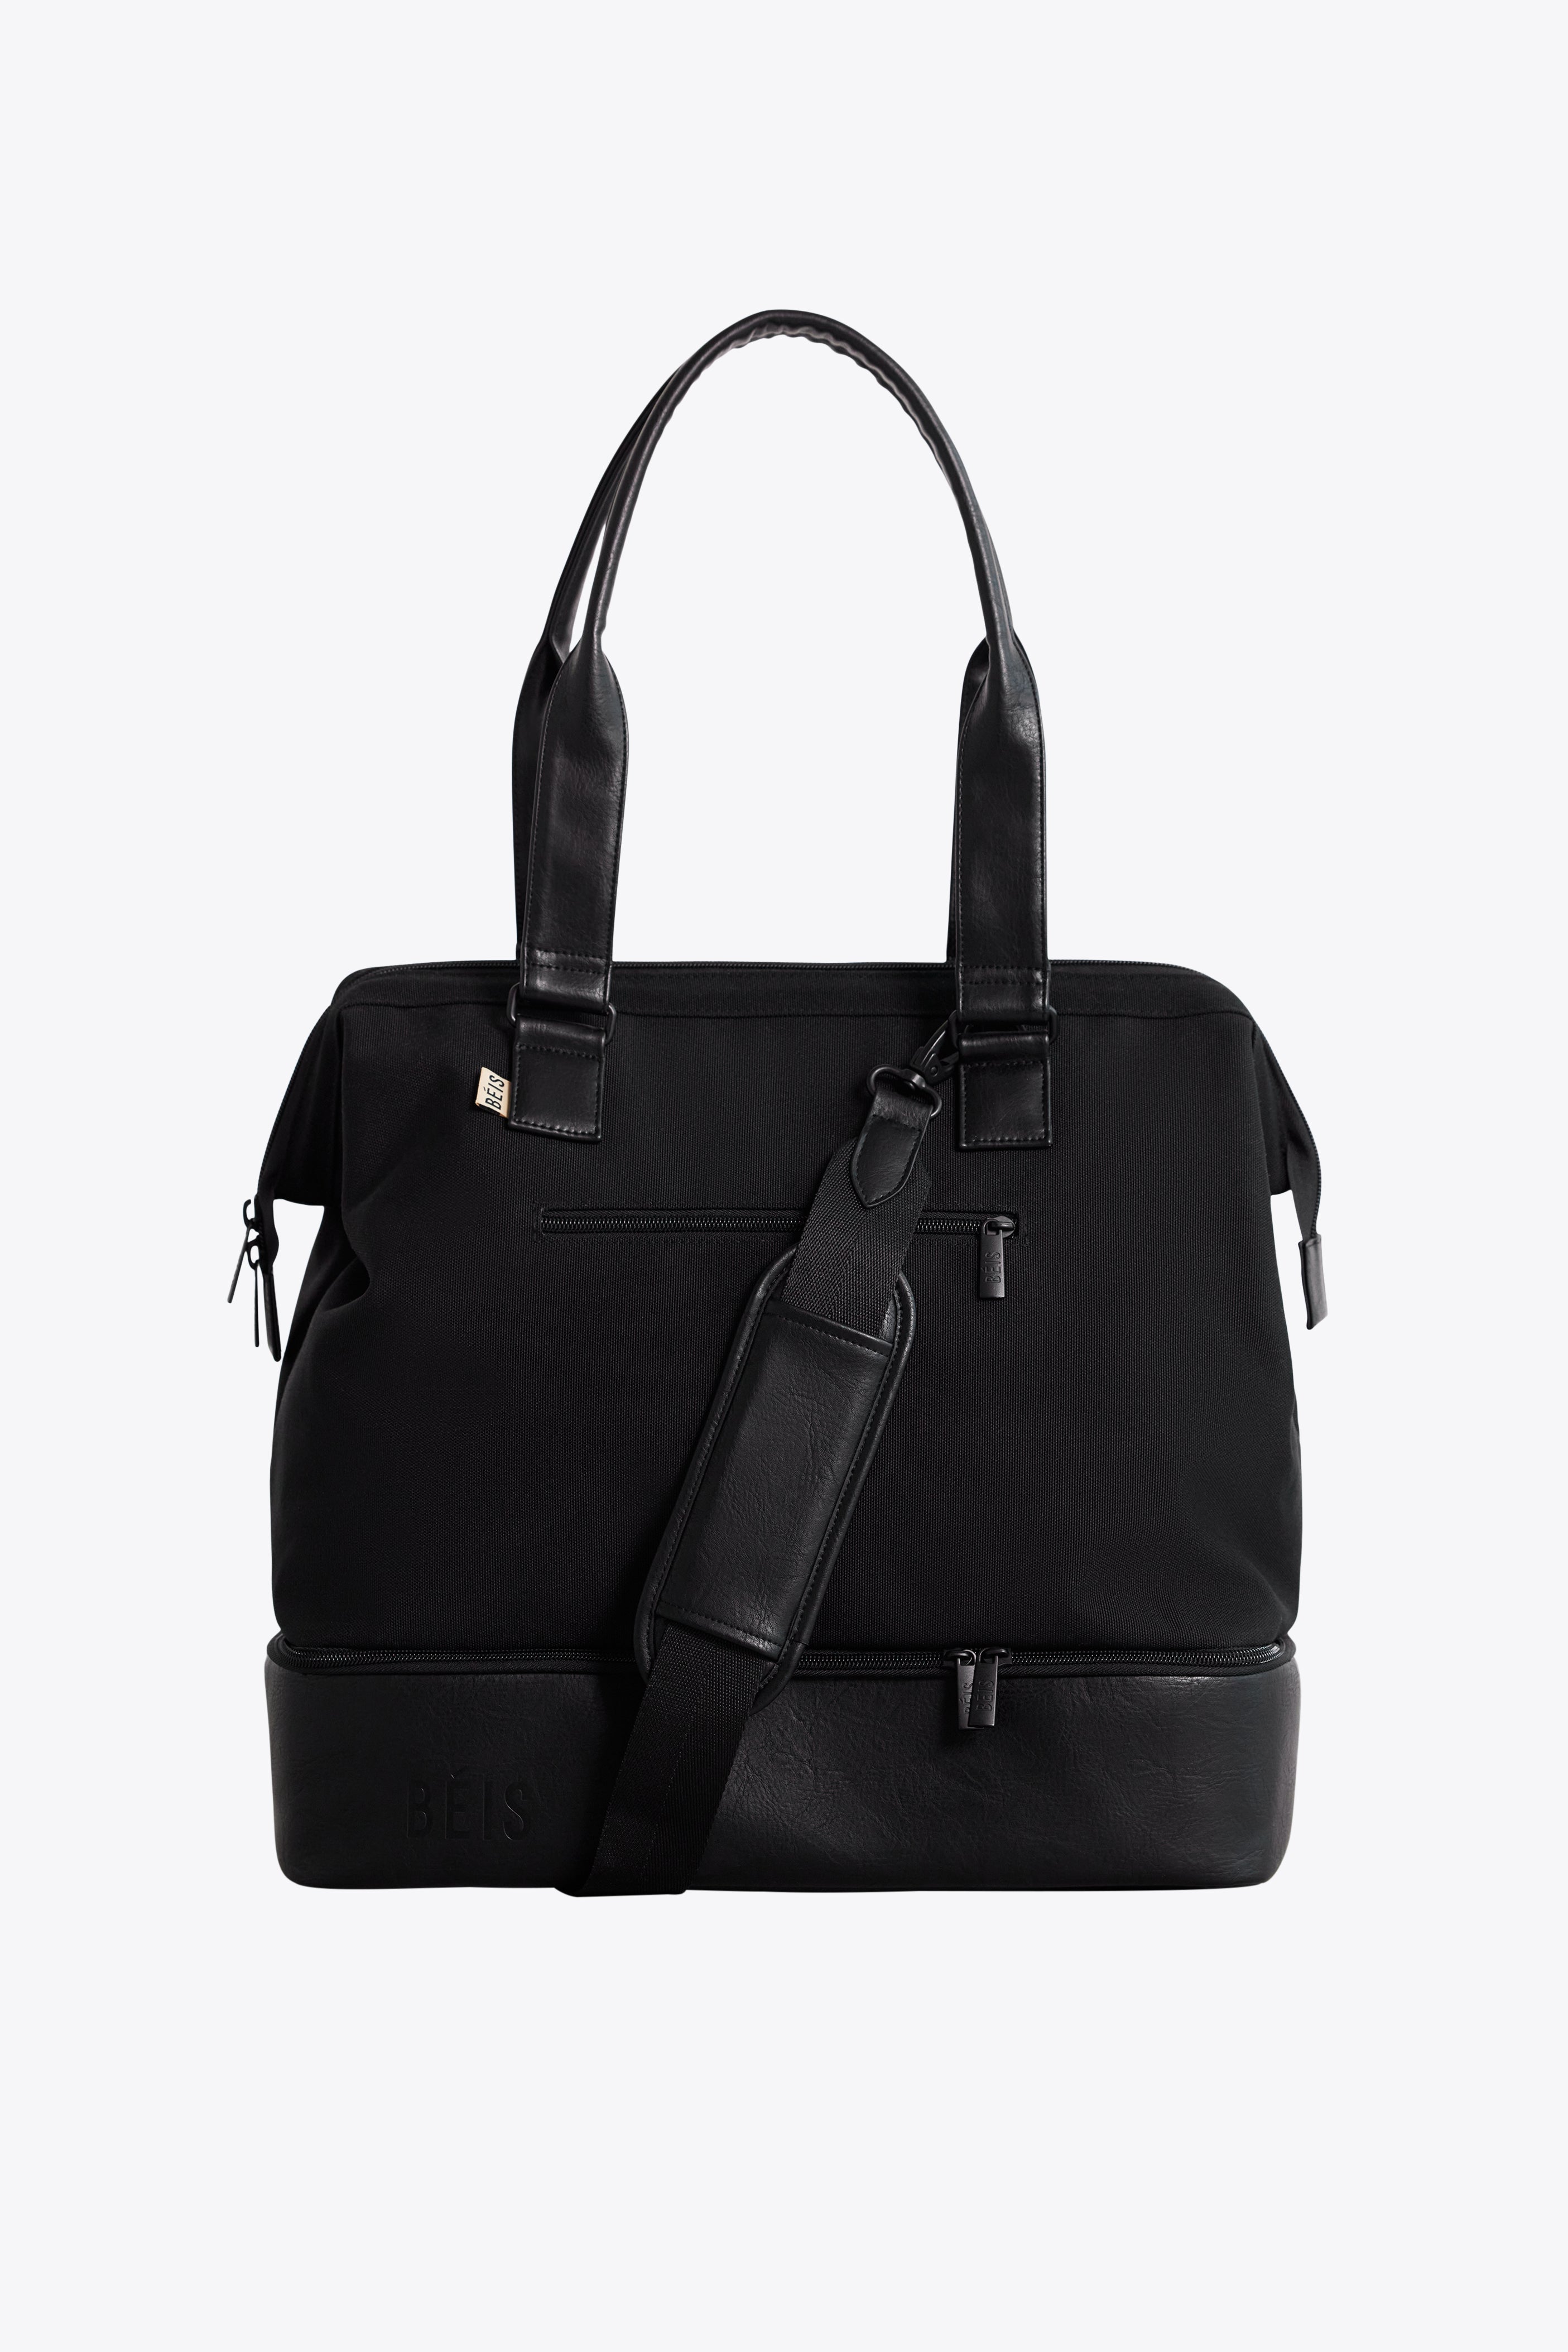 Béis 'The Mini Weekender' in Black - Black Travel Bag & Duffle Bag